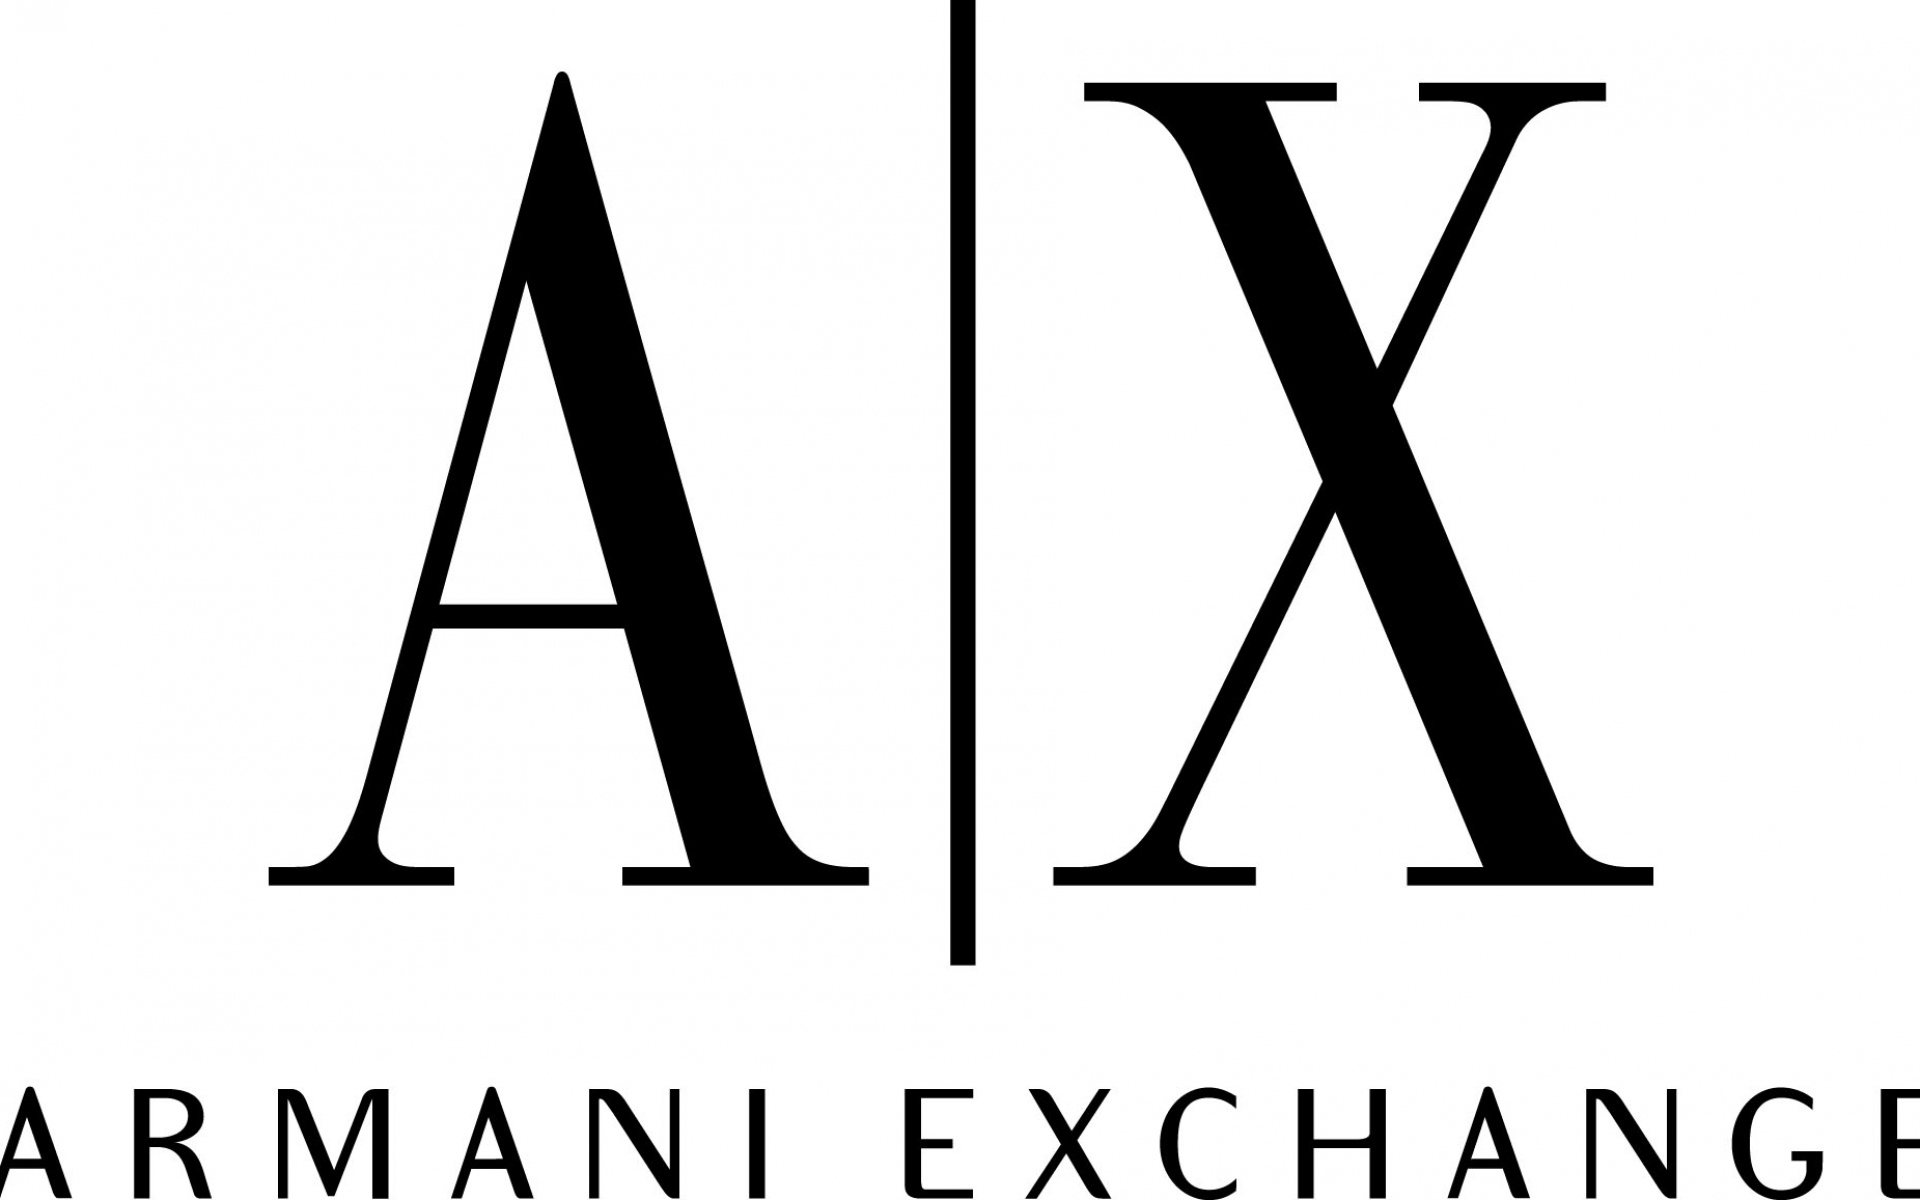 Картинки Armani exchange, логотип, бренды фото и обои на рабочий стол